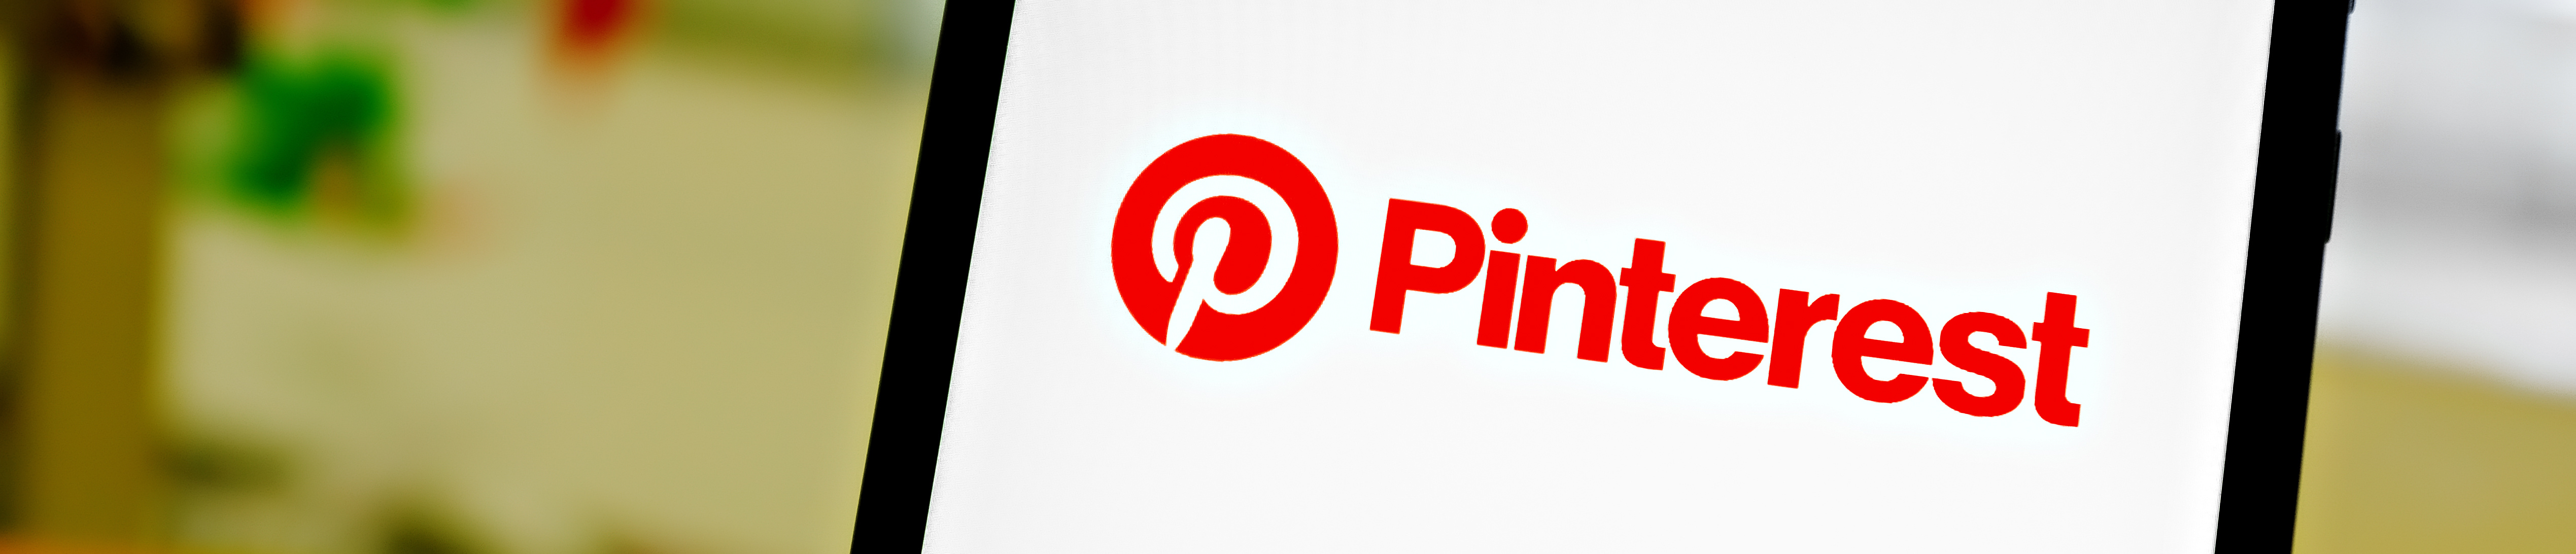 Pinterest mobile